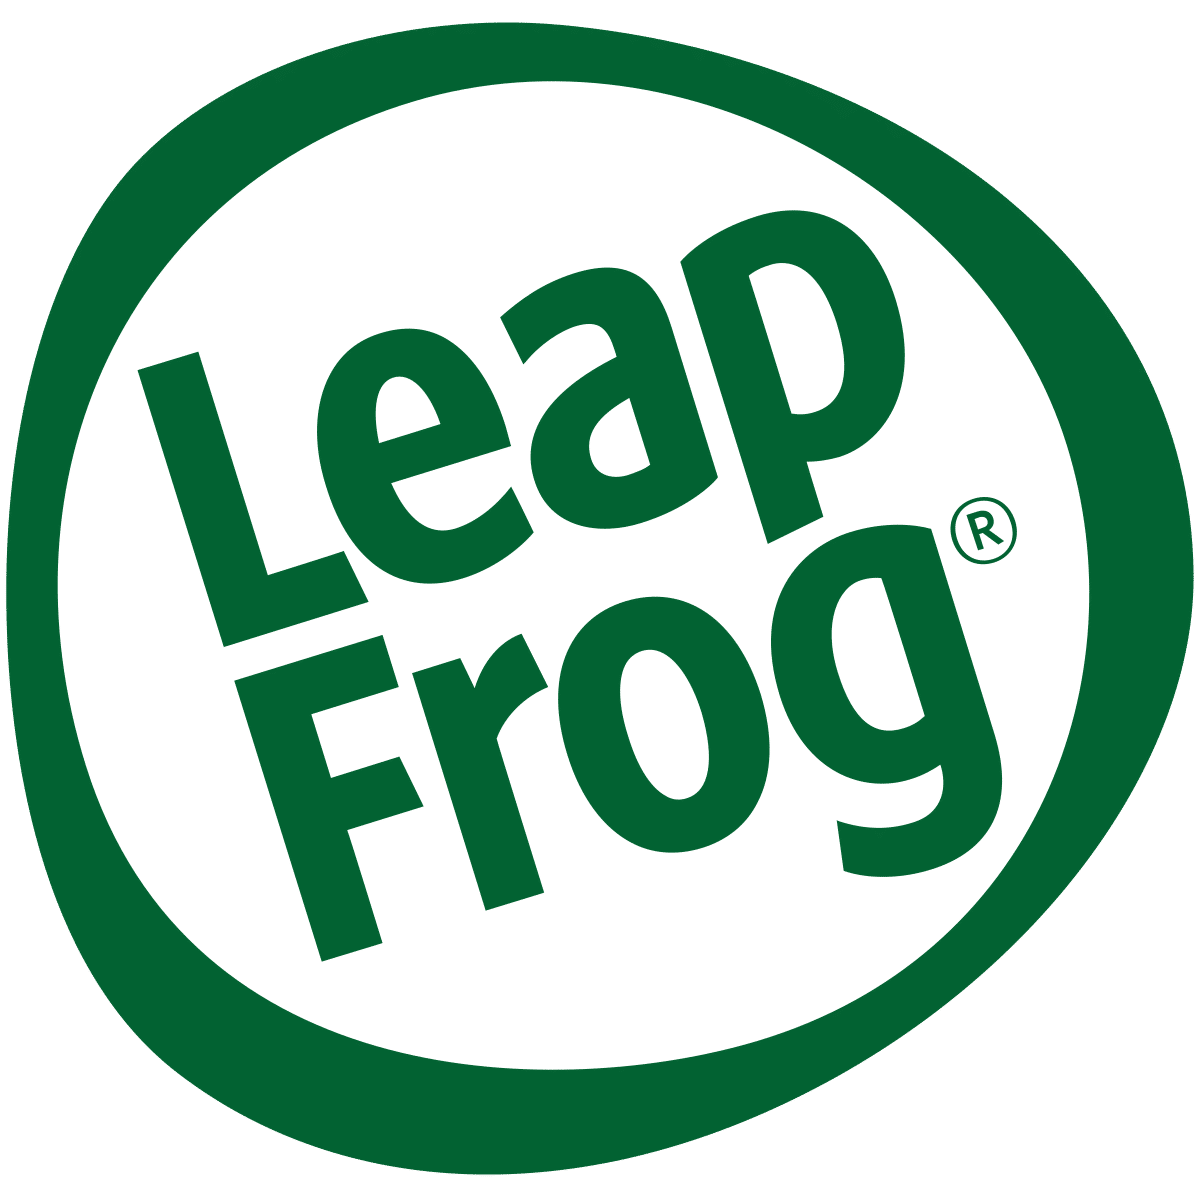 LeapFrog logo